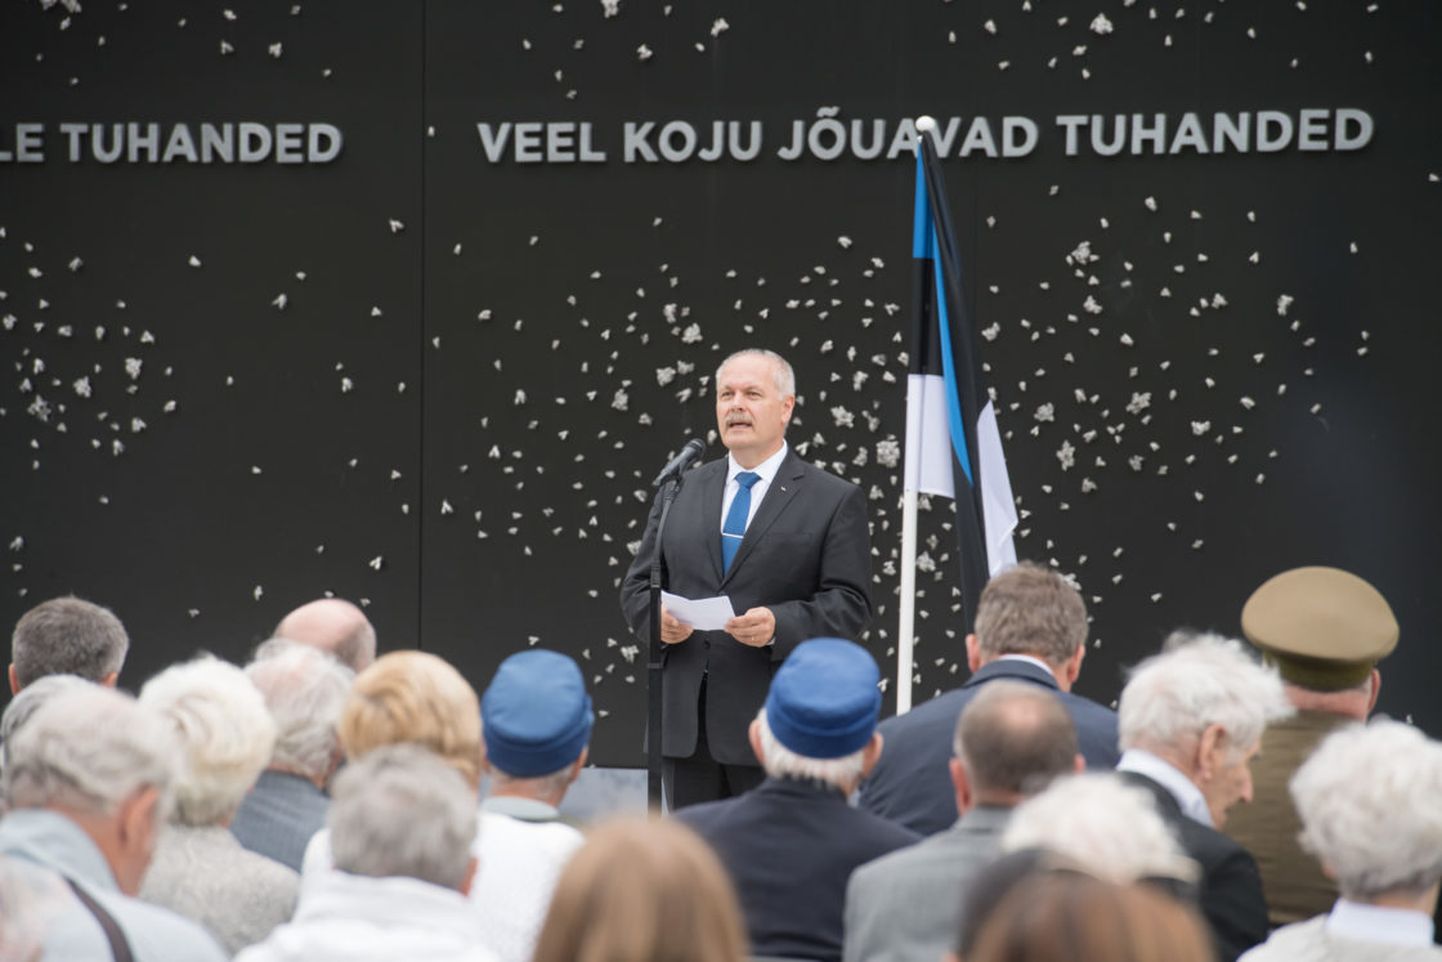 Riigikogu esimees Henn Põlluaas pidas kõne ja asetas pärja Eesti rahva nimel juuniküüditamise mälestustseremoonial.